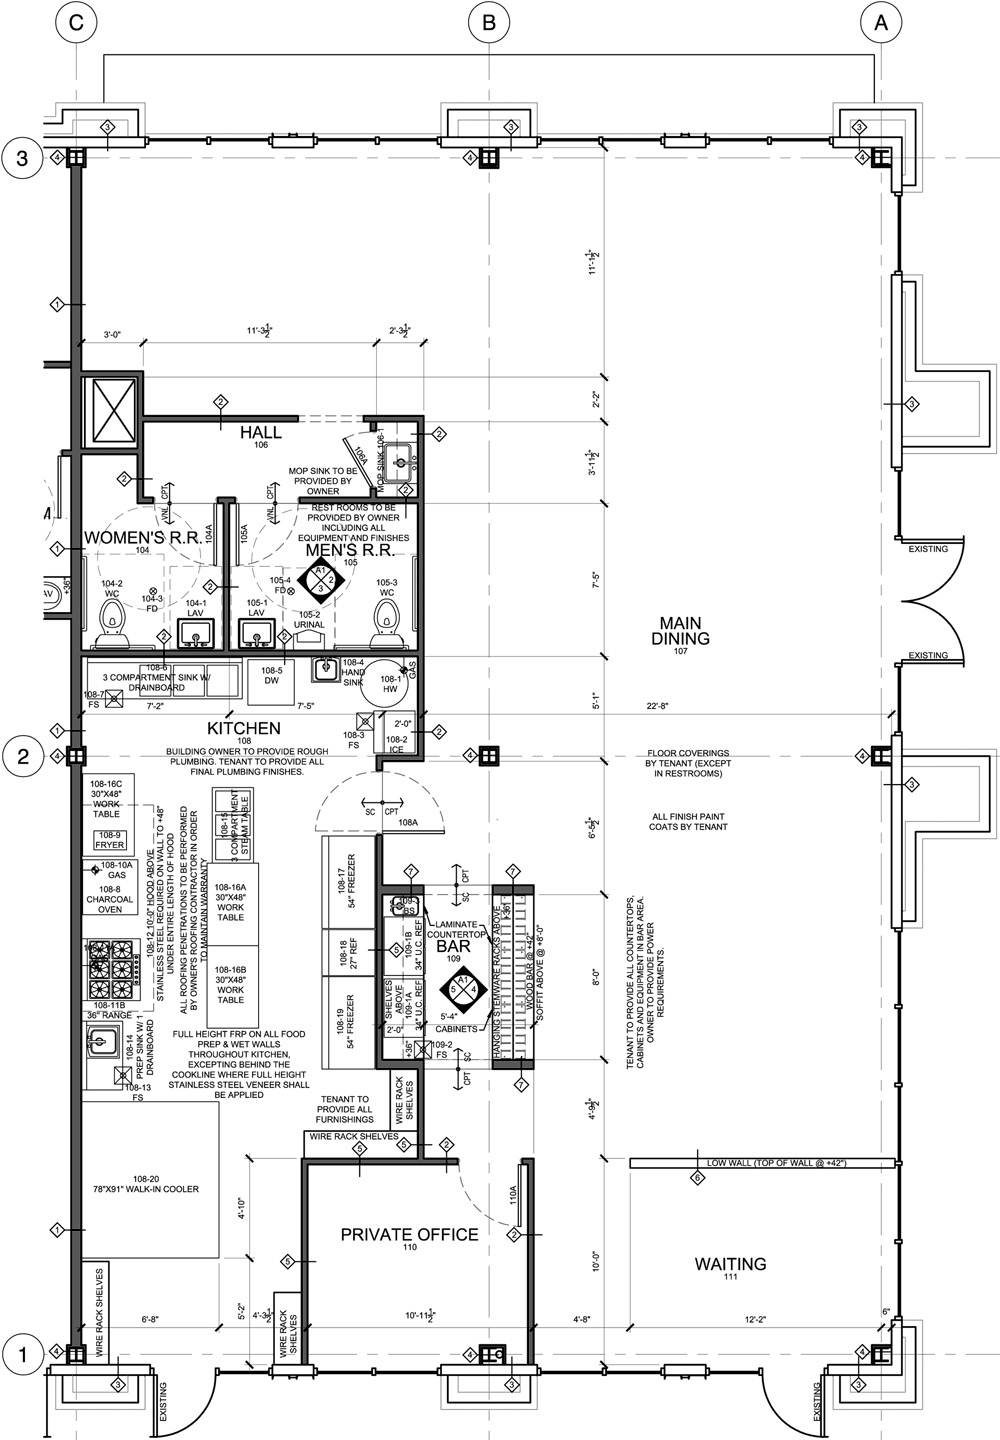 tenant-improvement-restaurant-floor-plan